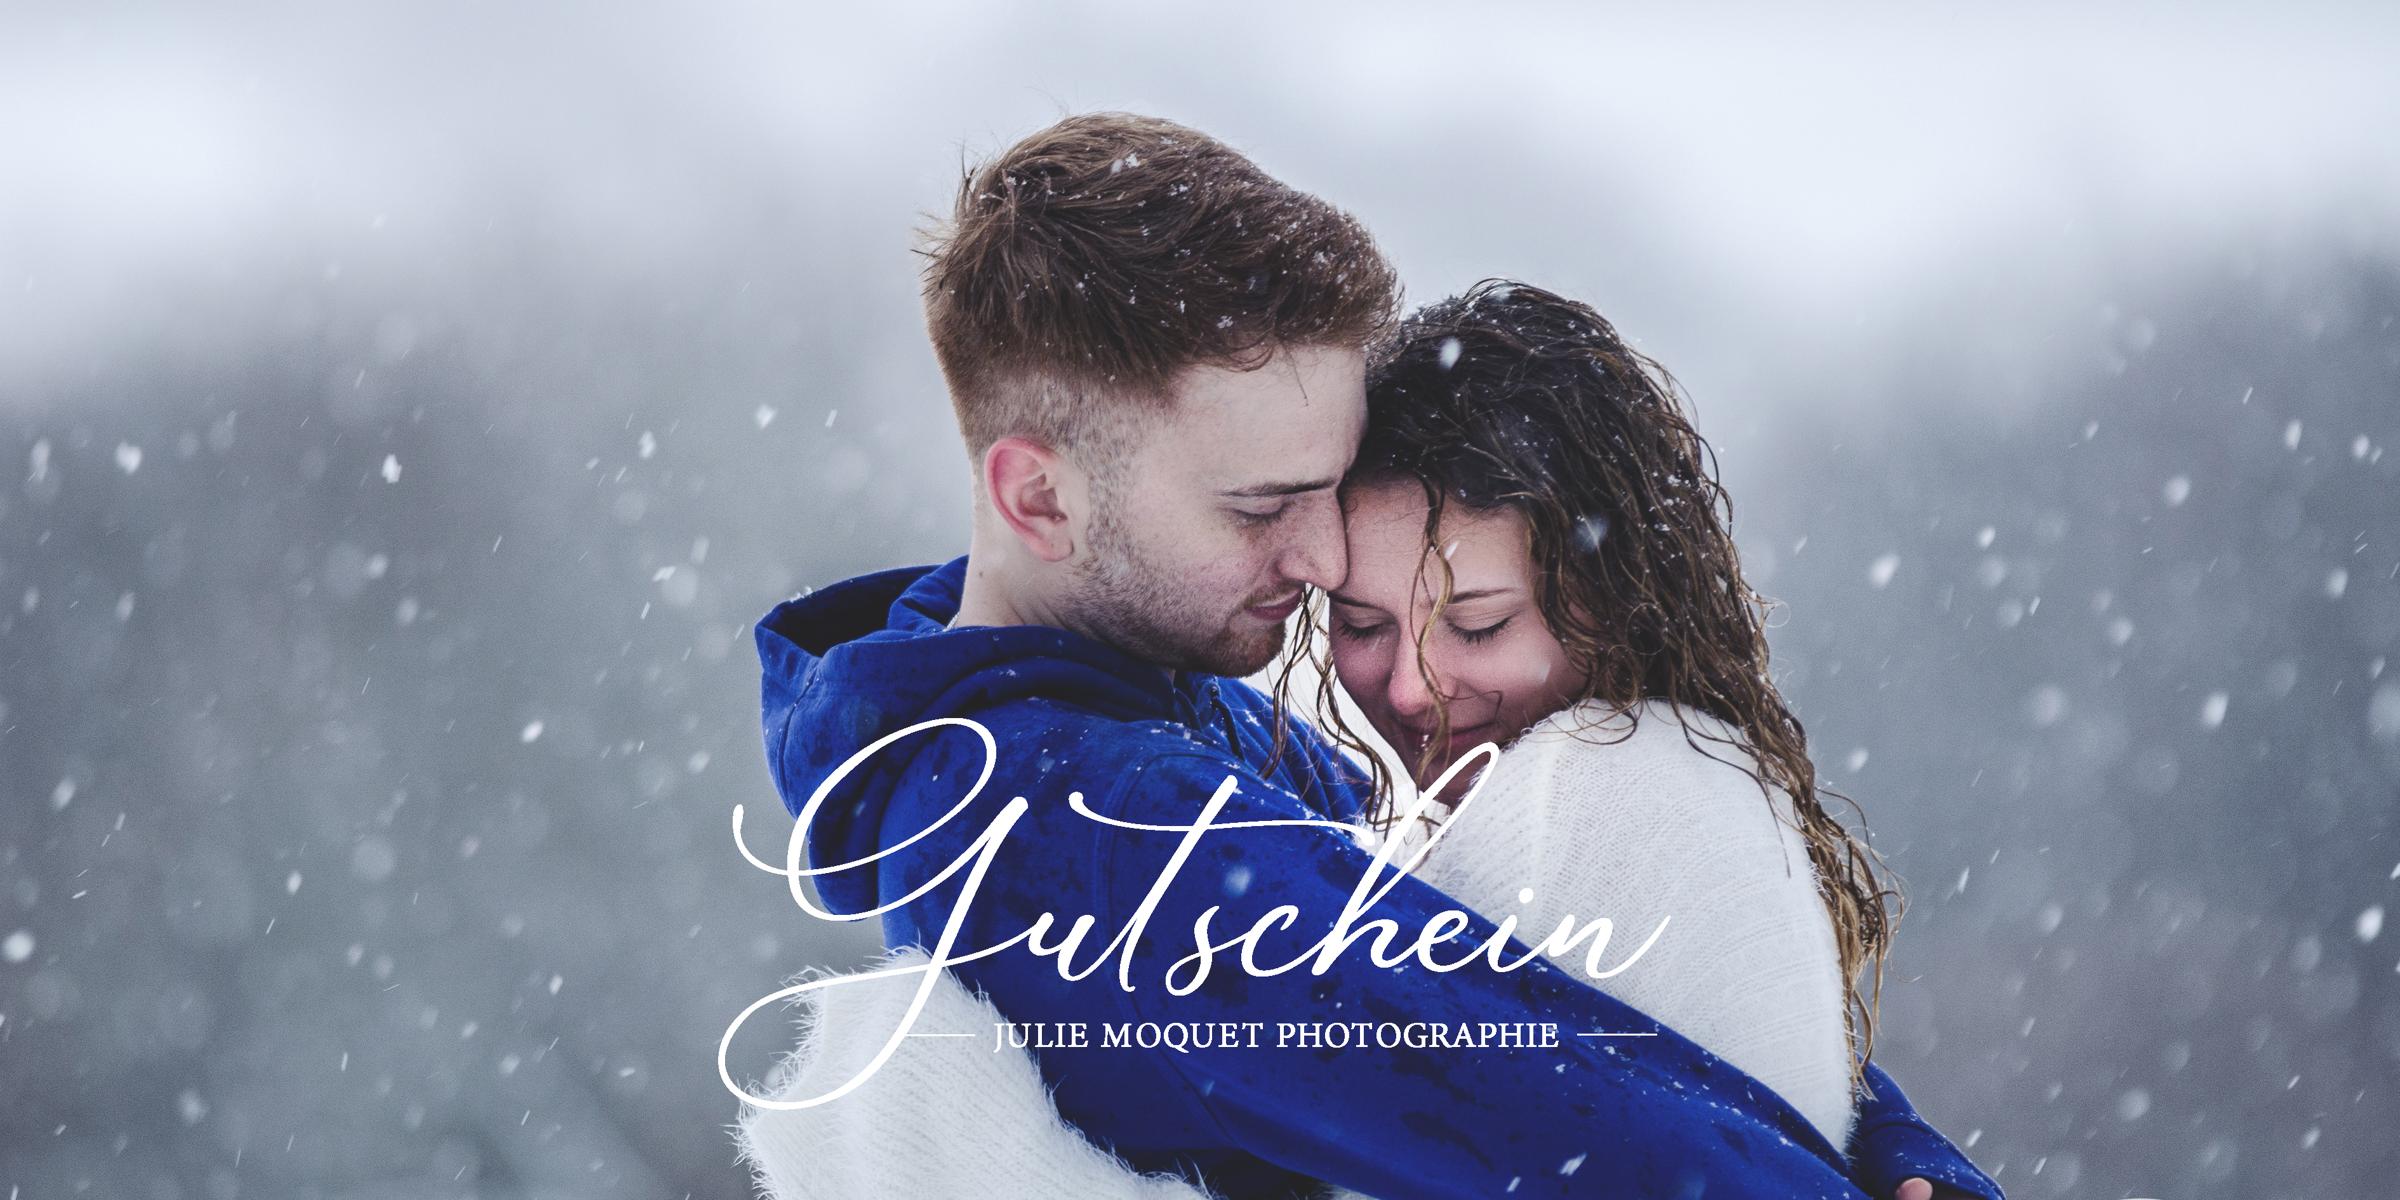 Ein Gutscheinmotiv mit einem Paar, das sich im Schneesturm umarmt.